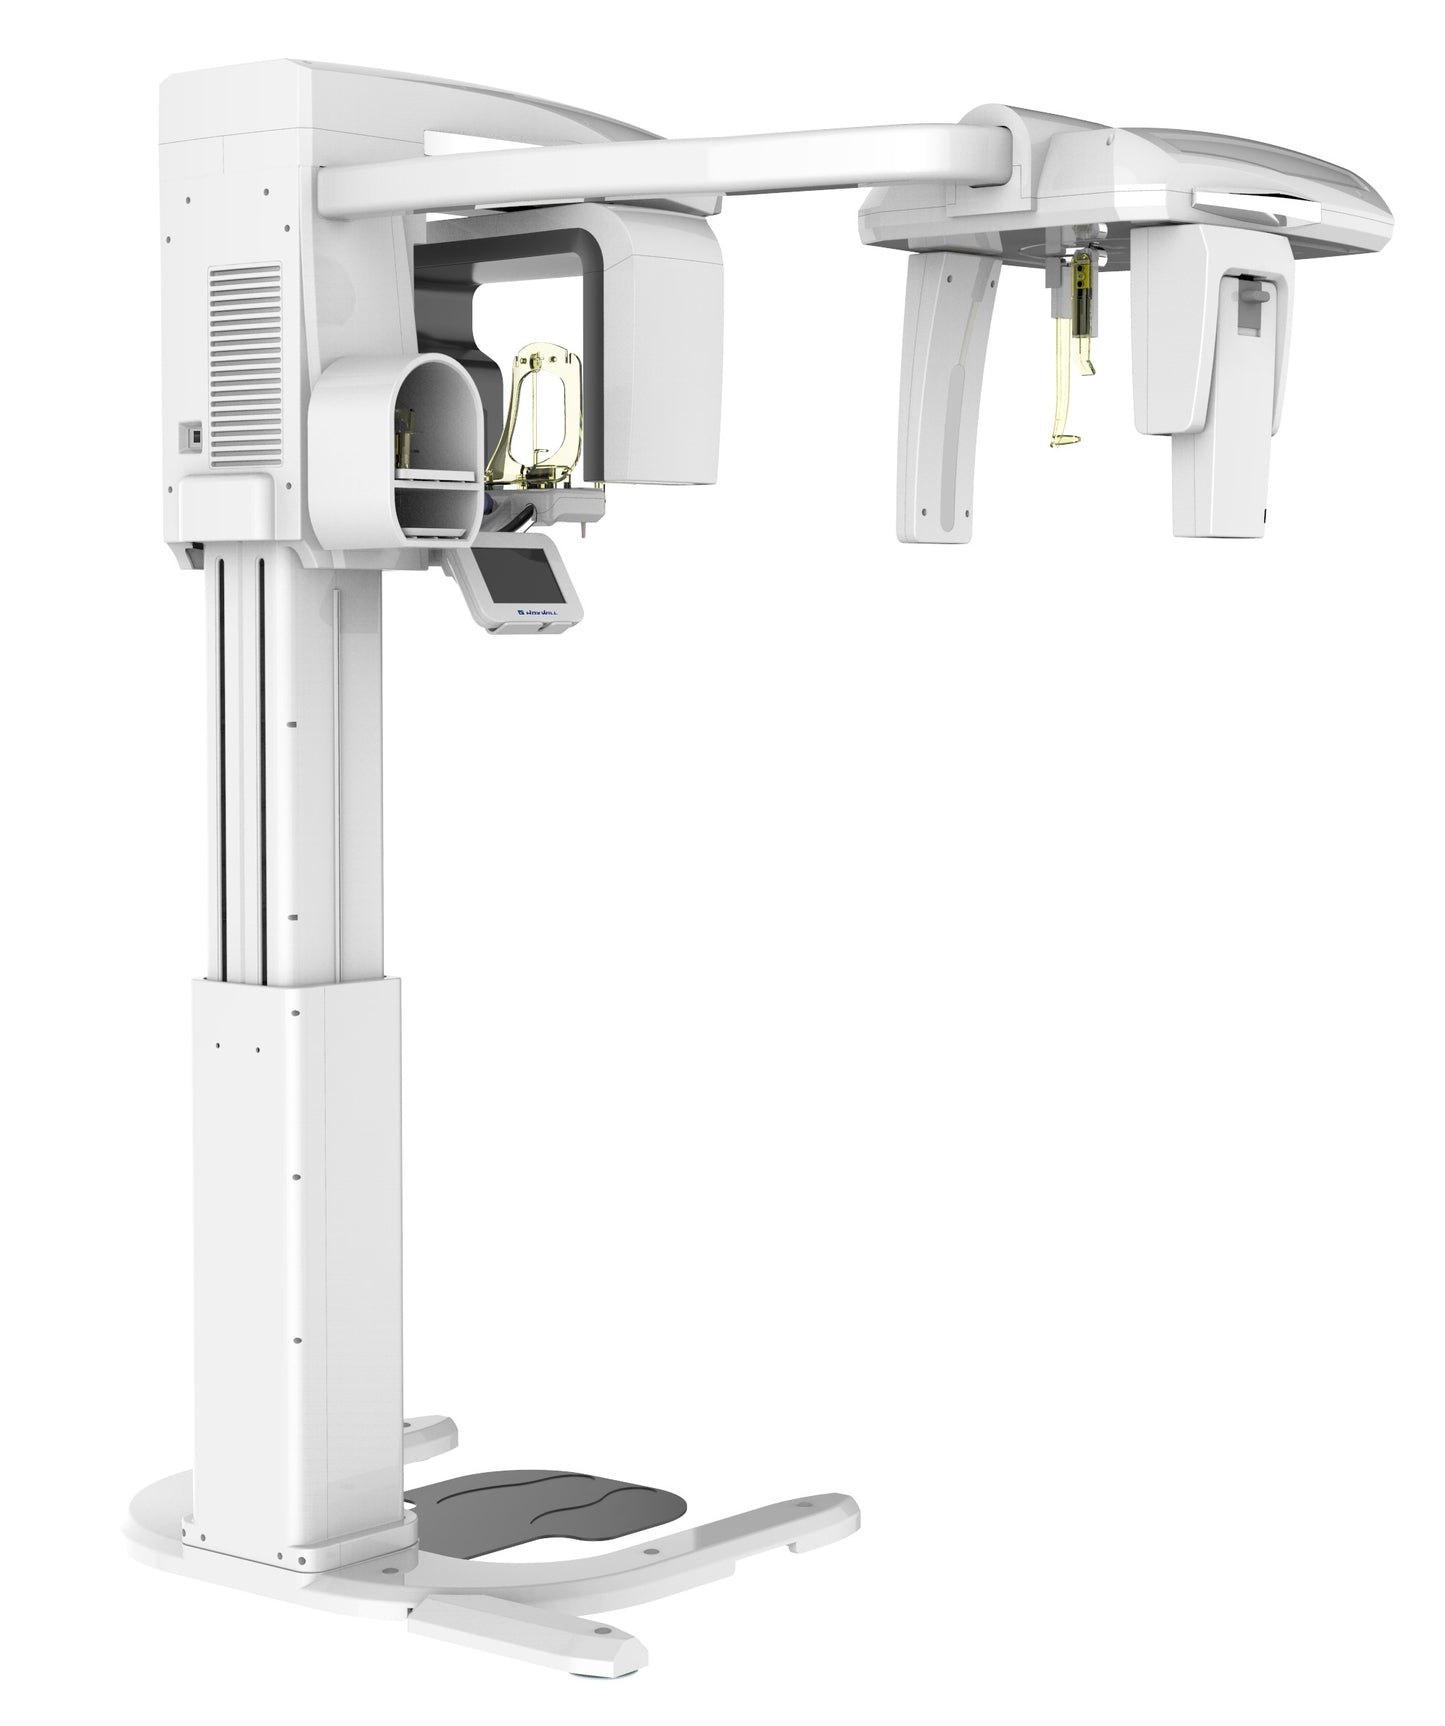 Eco-x AI 12x9 DVT-Röntgensystem mit Scan Ceph & Künstlicher Intelligenz